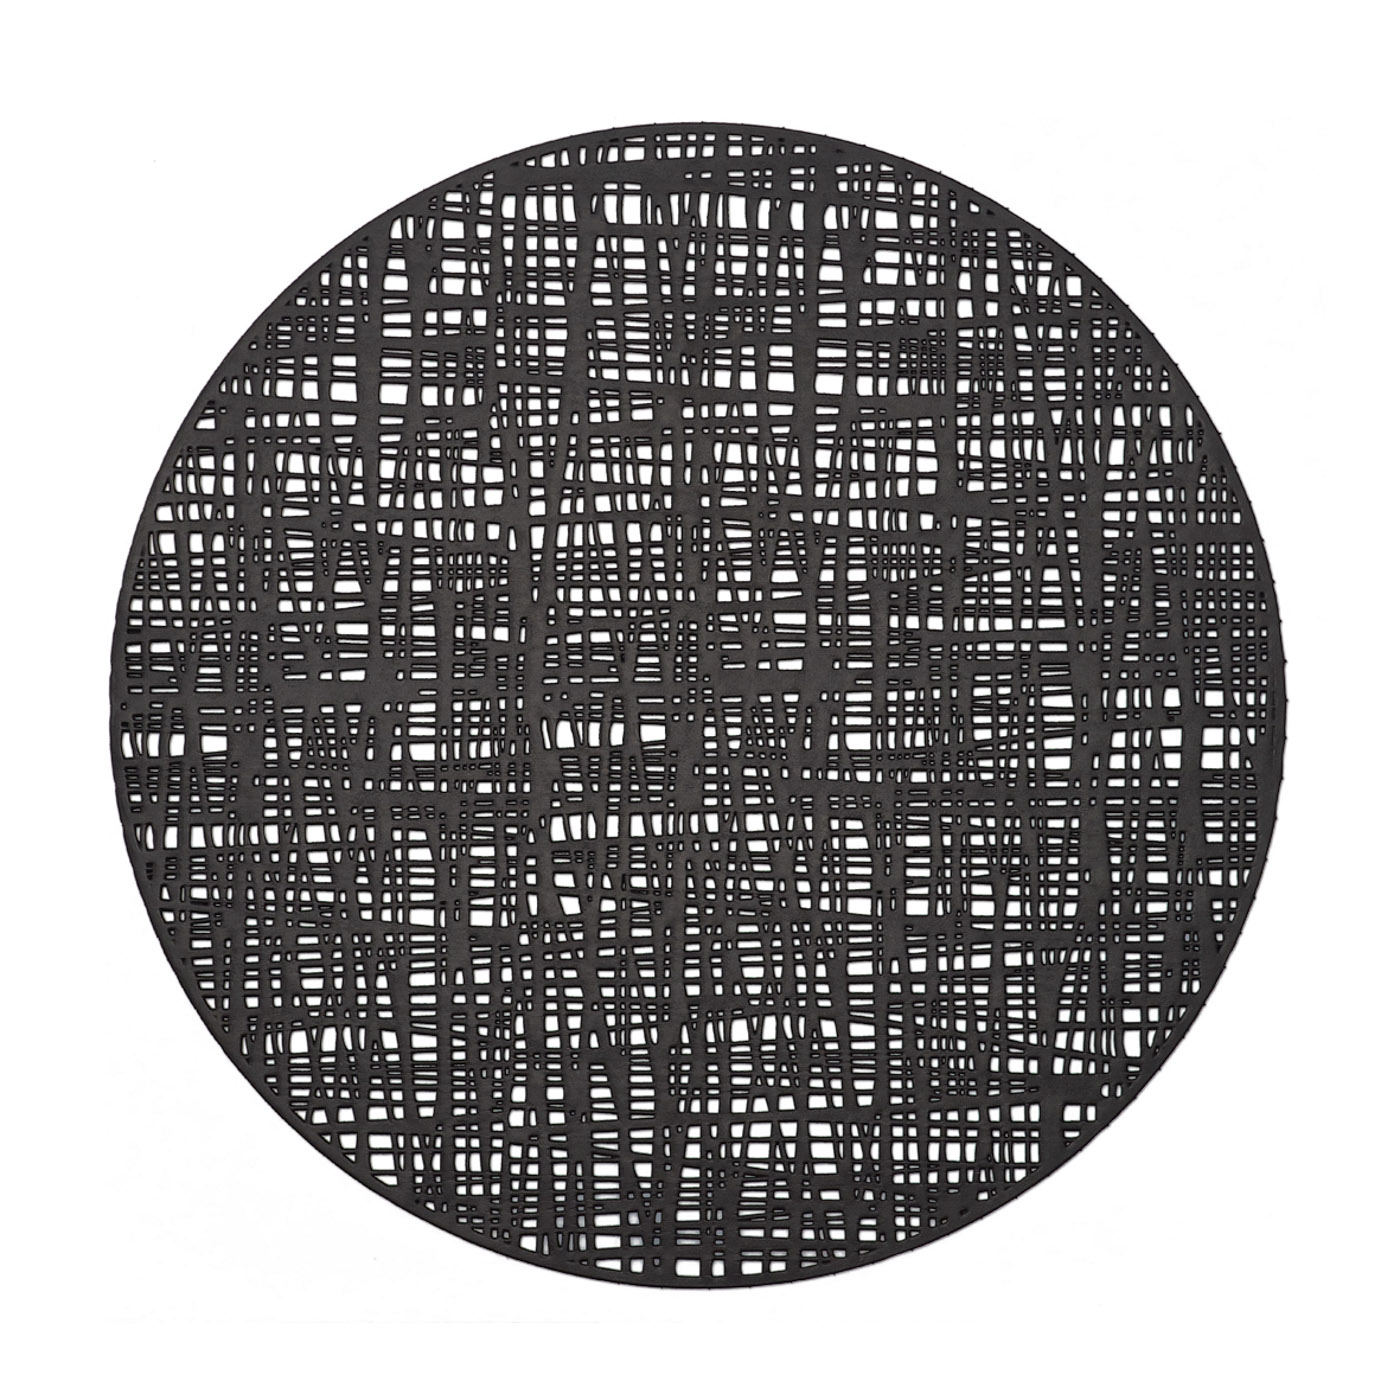 Platzset, PVC, Ø38 cm. Farbe: schwarz. Das schicke Platzset sorgt für bewundernde Blicke! Dabei braucht es nicht unbedingt einen